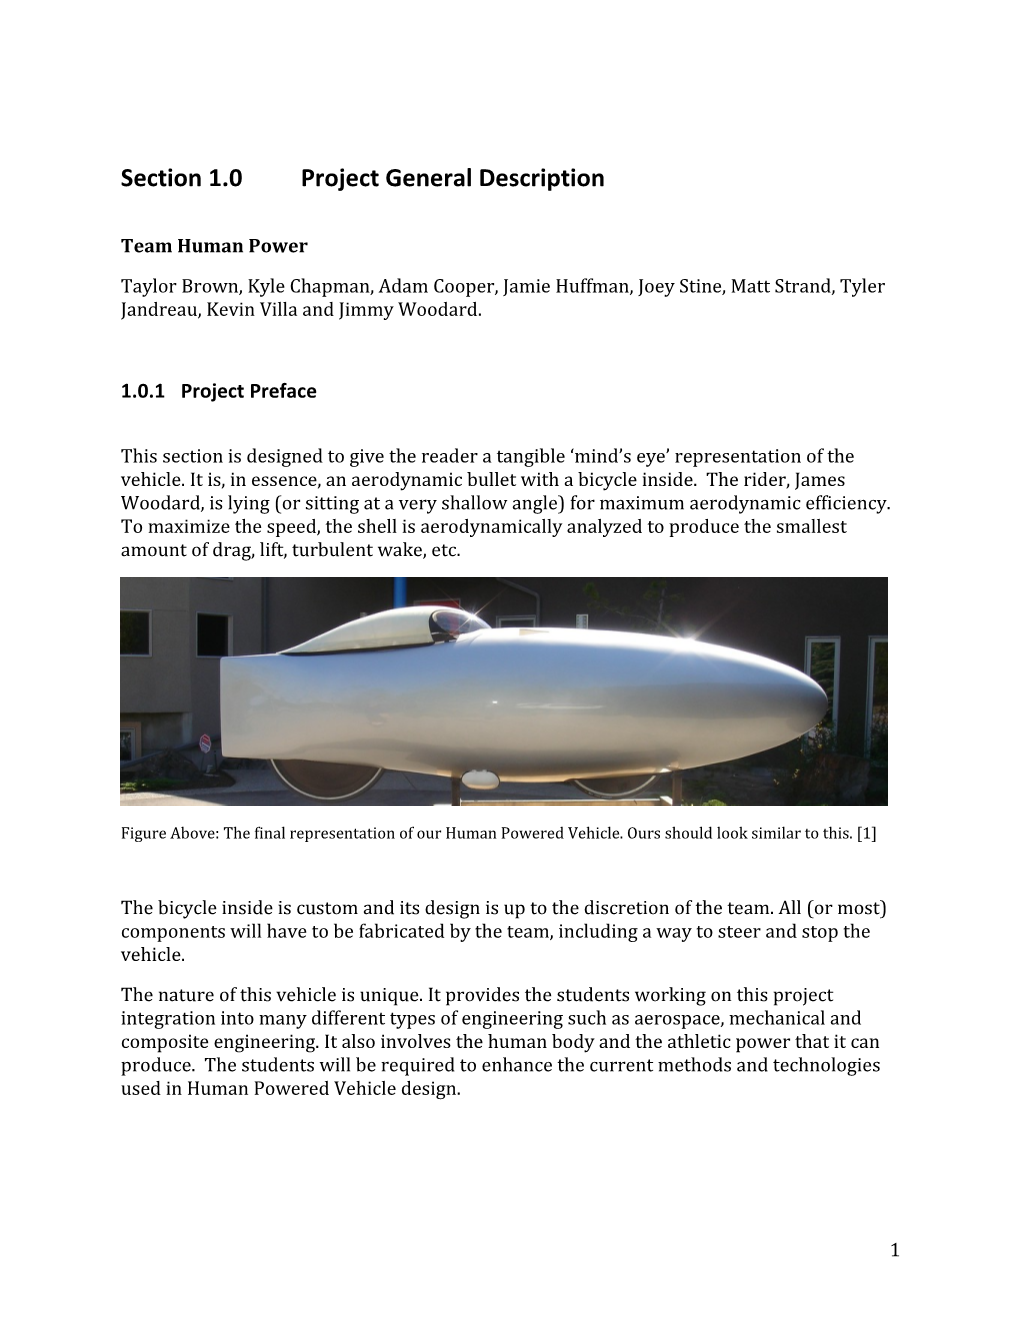 Section 1.0 Project General Description